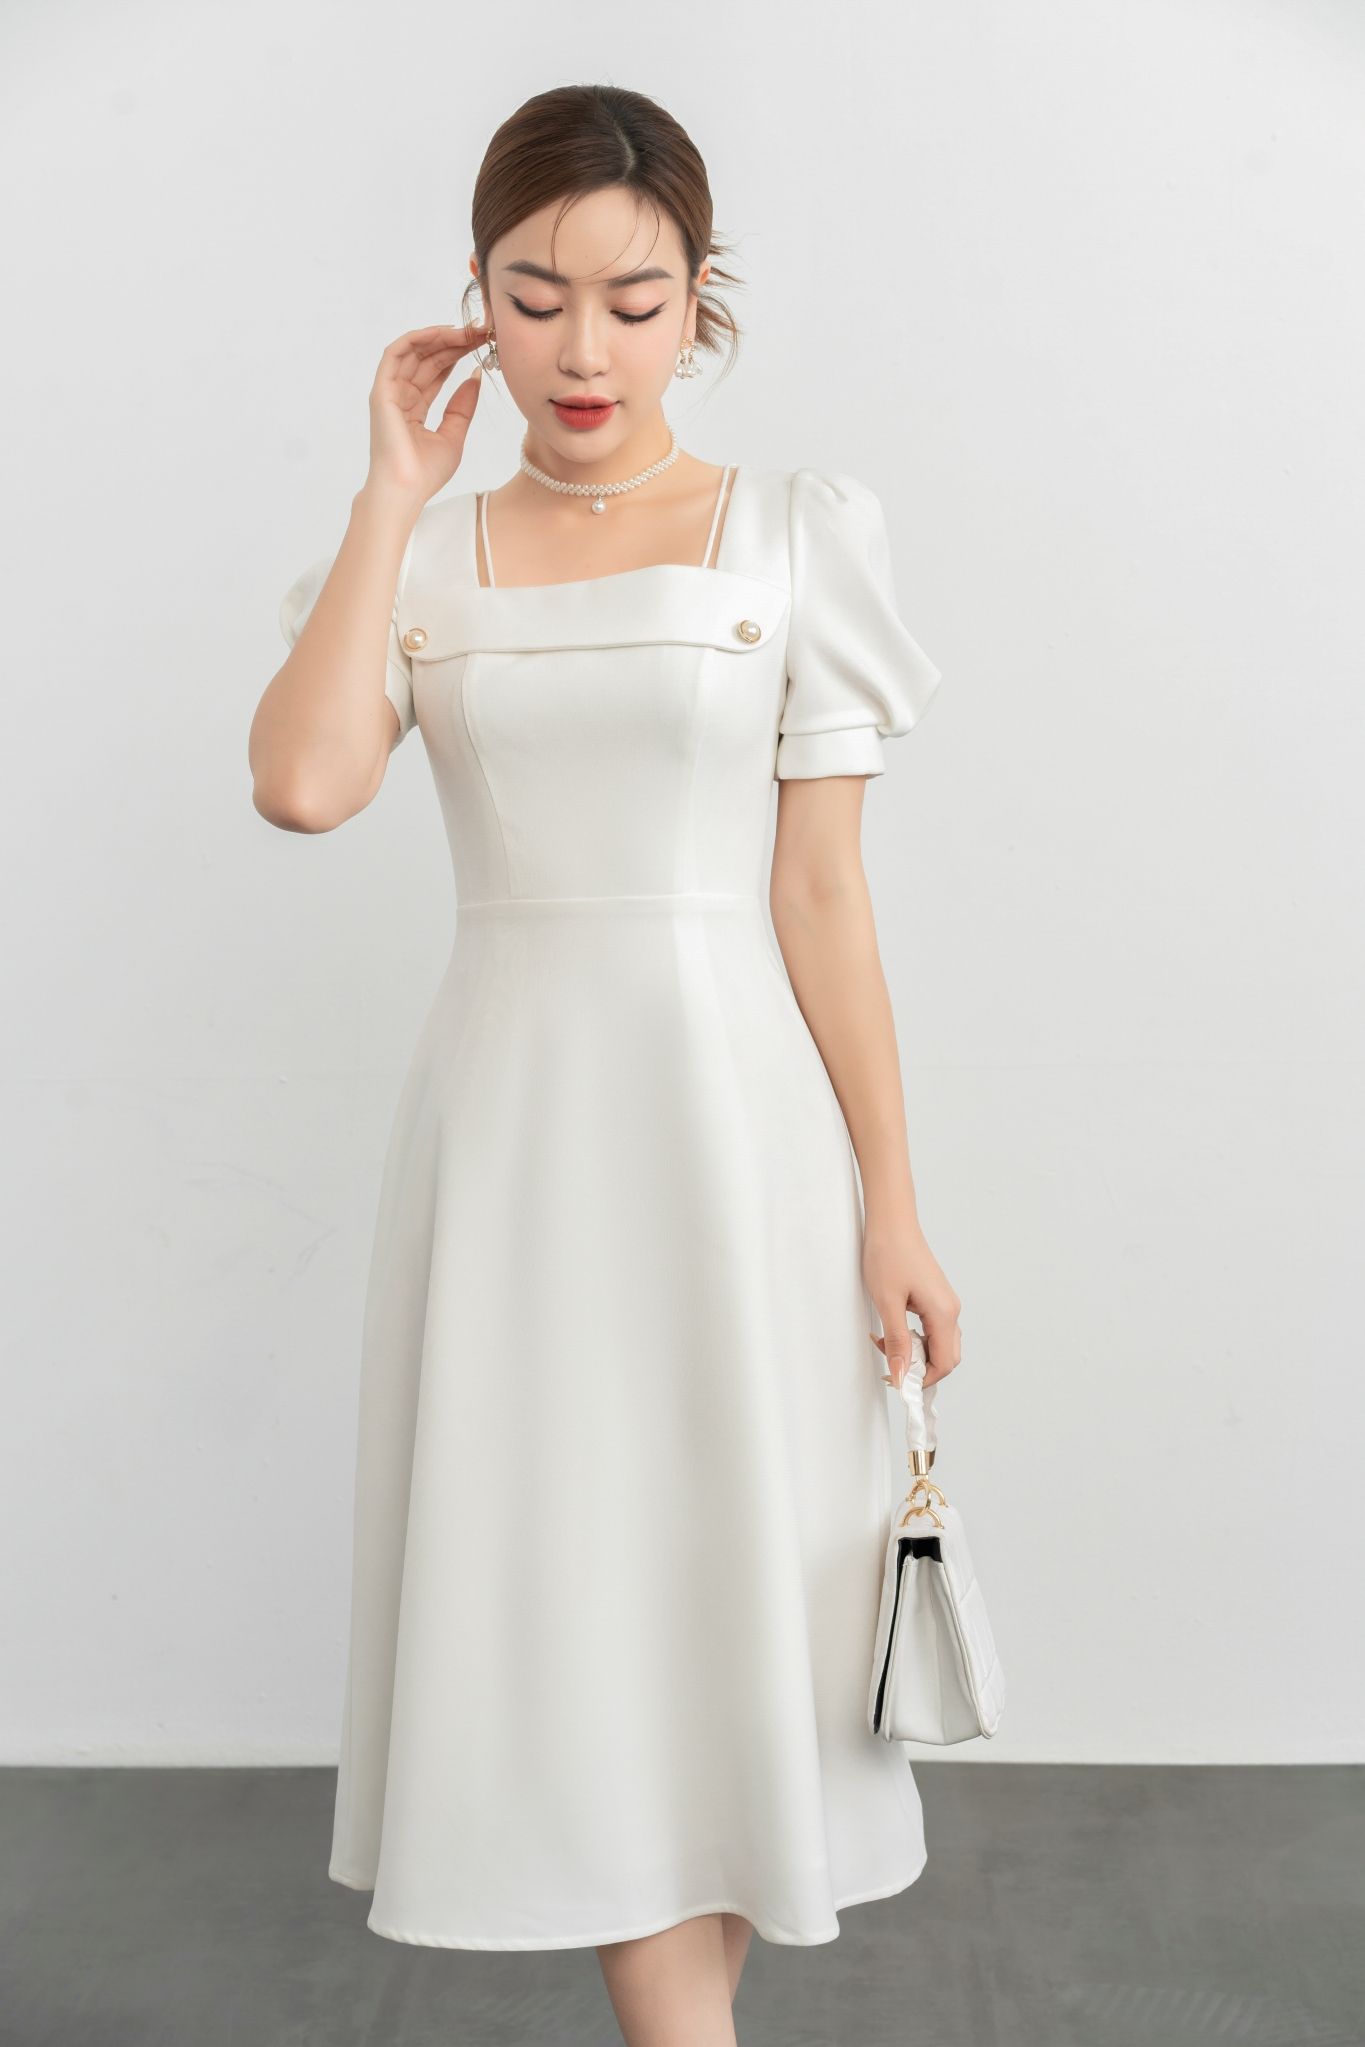 Đầm tây bồng màu trắng cổ vuông - Oreka.vn